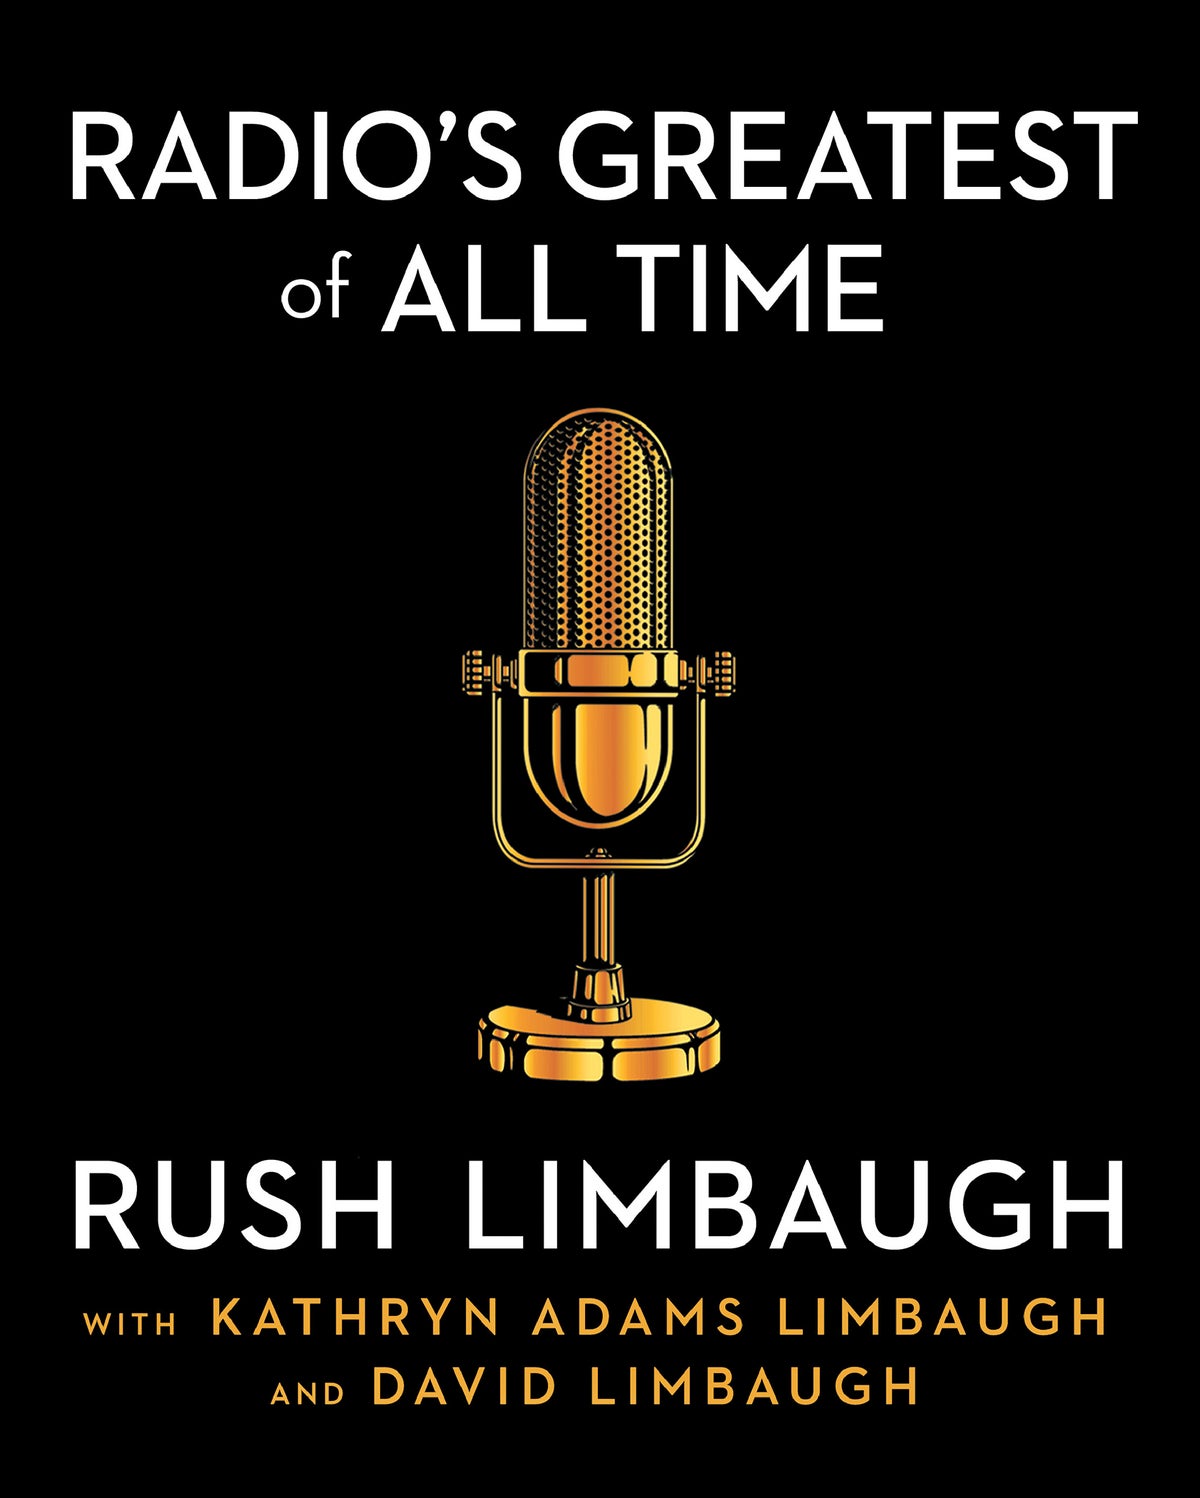 Limbaugh radyo yorumu kitabı 25 Ekim'de yayınlanacak